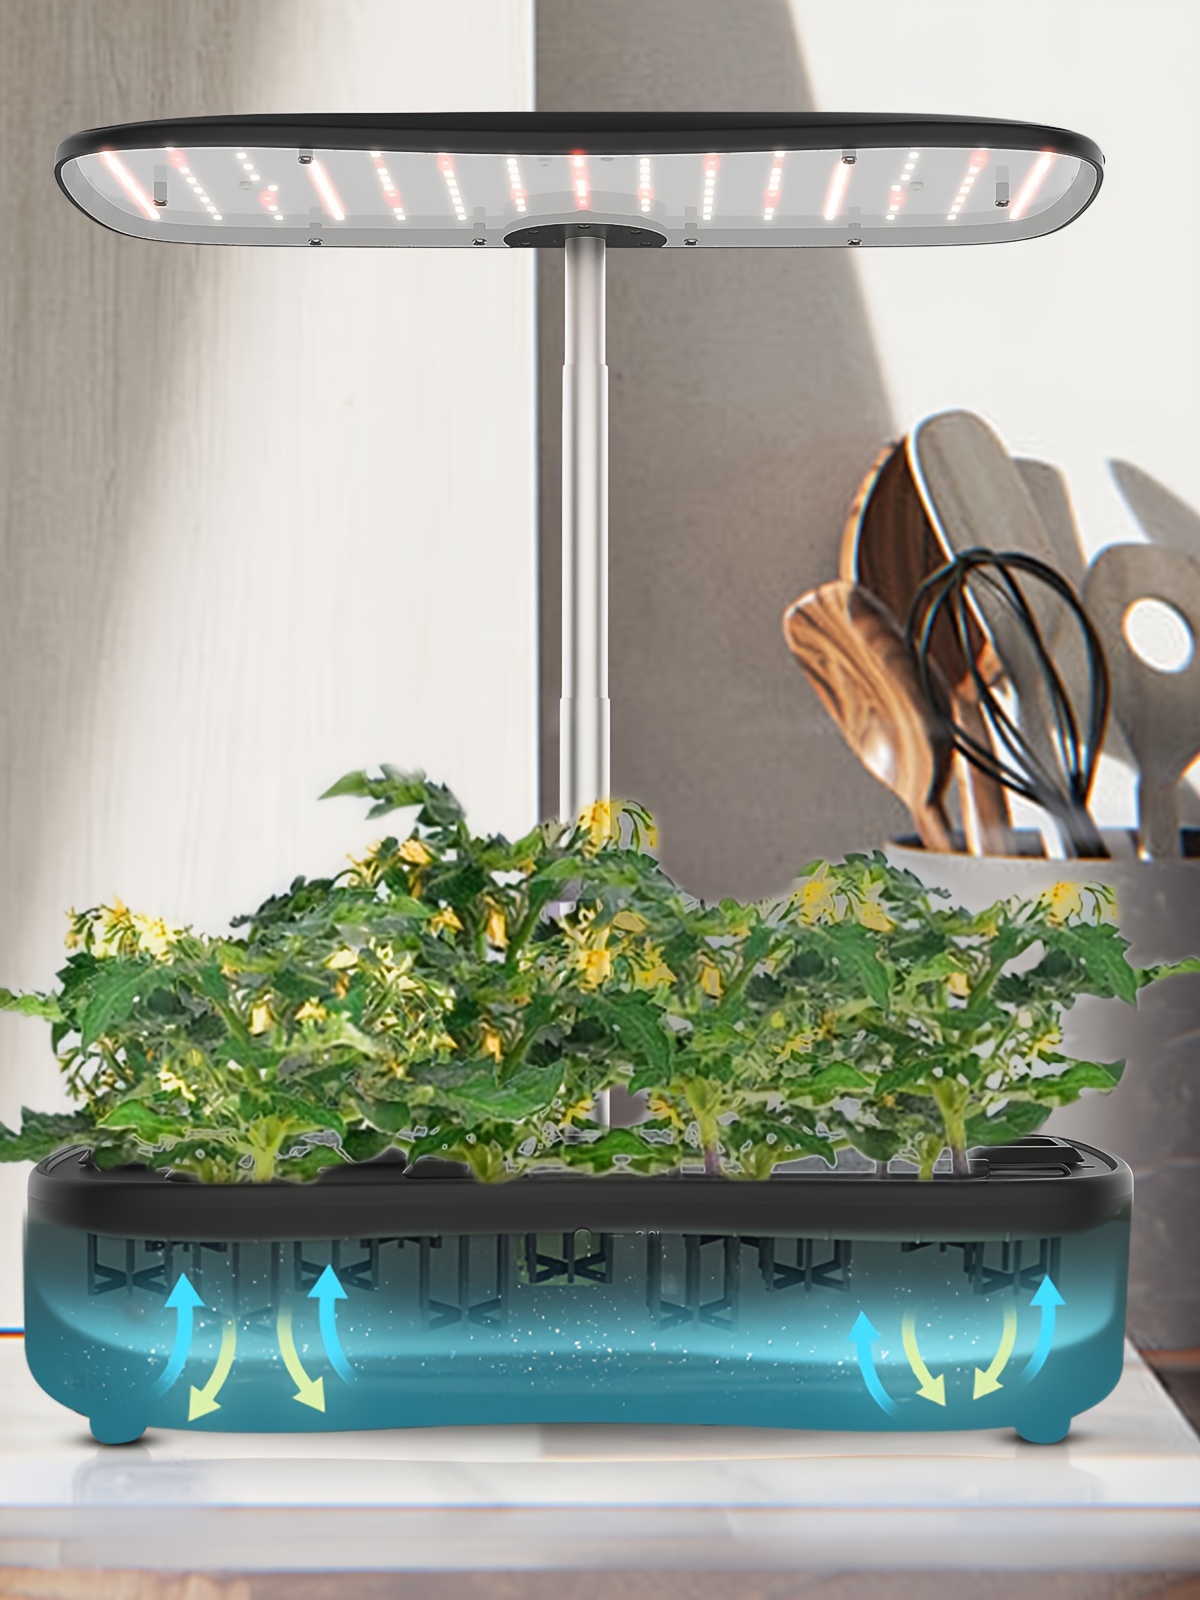 1パック 水耕栽培キット 室内水耕栽培キット LEDグローライト 植物育成